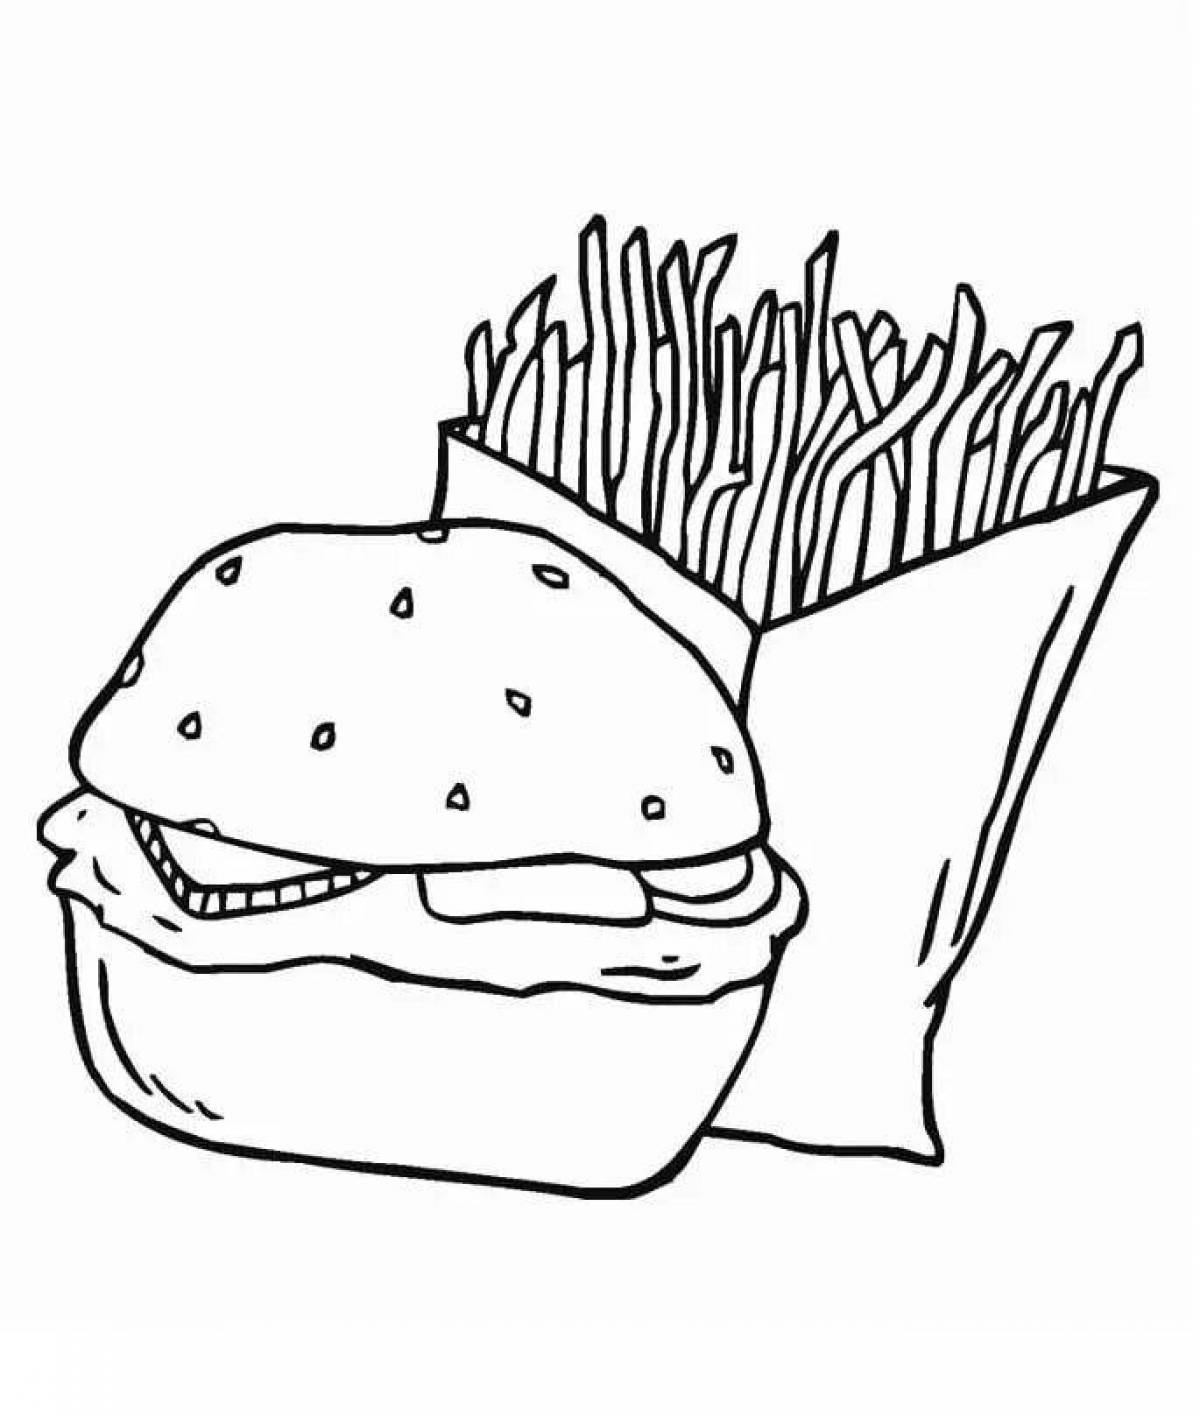 Gourmet burger coloring book for kids